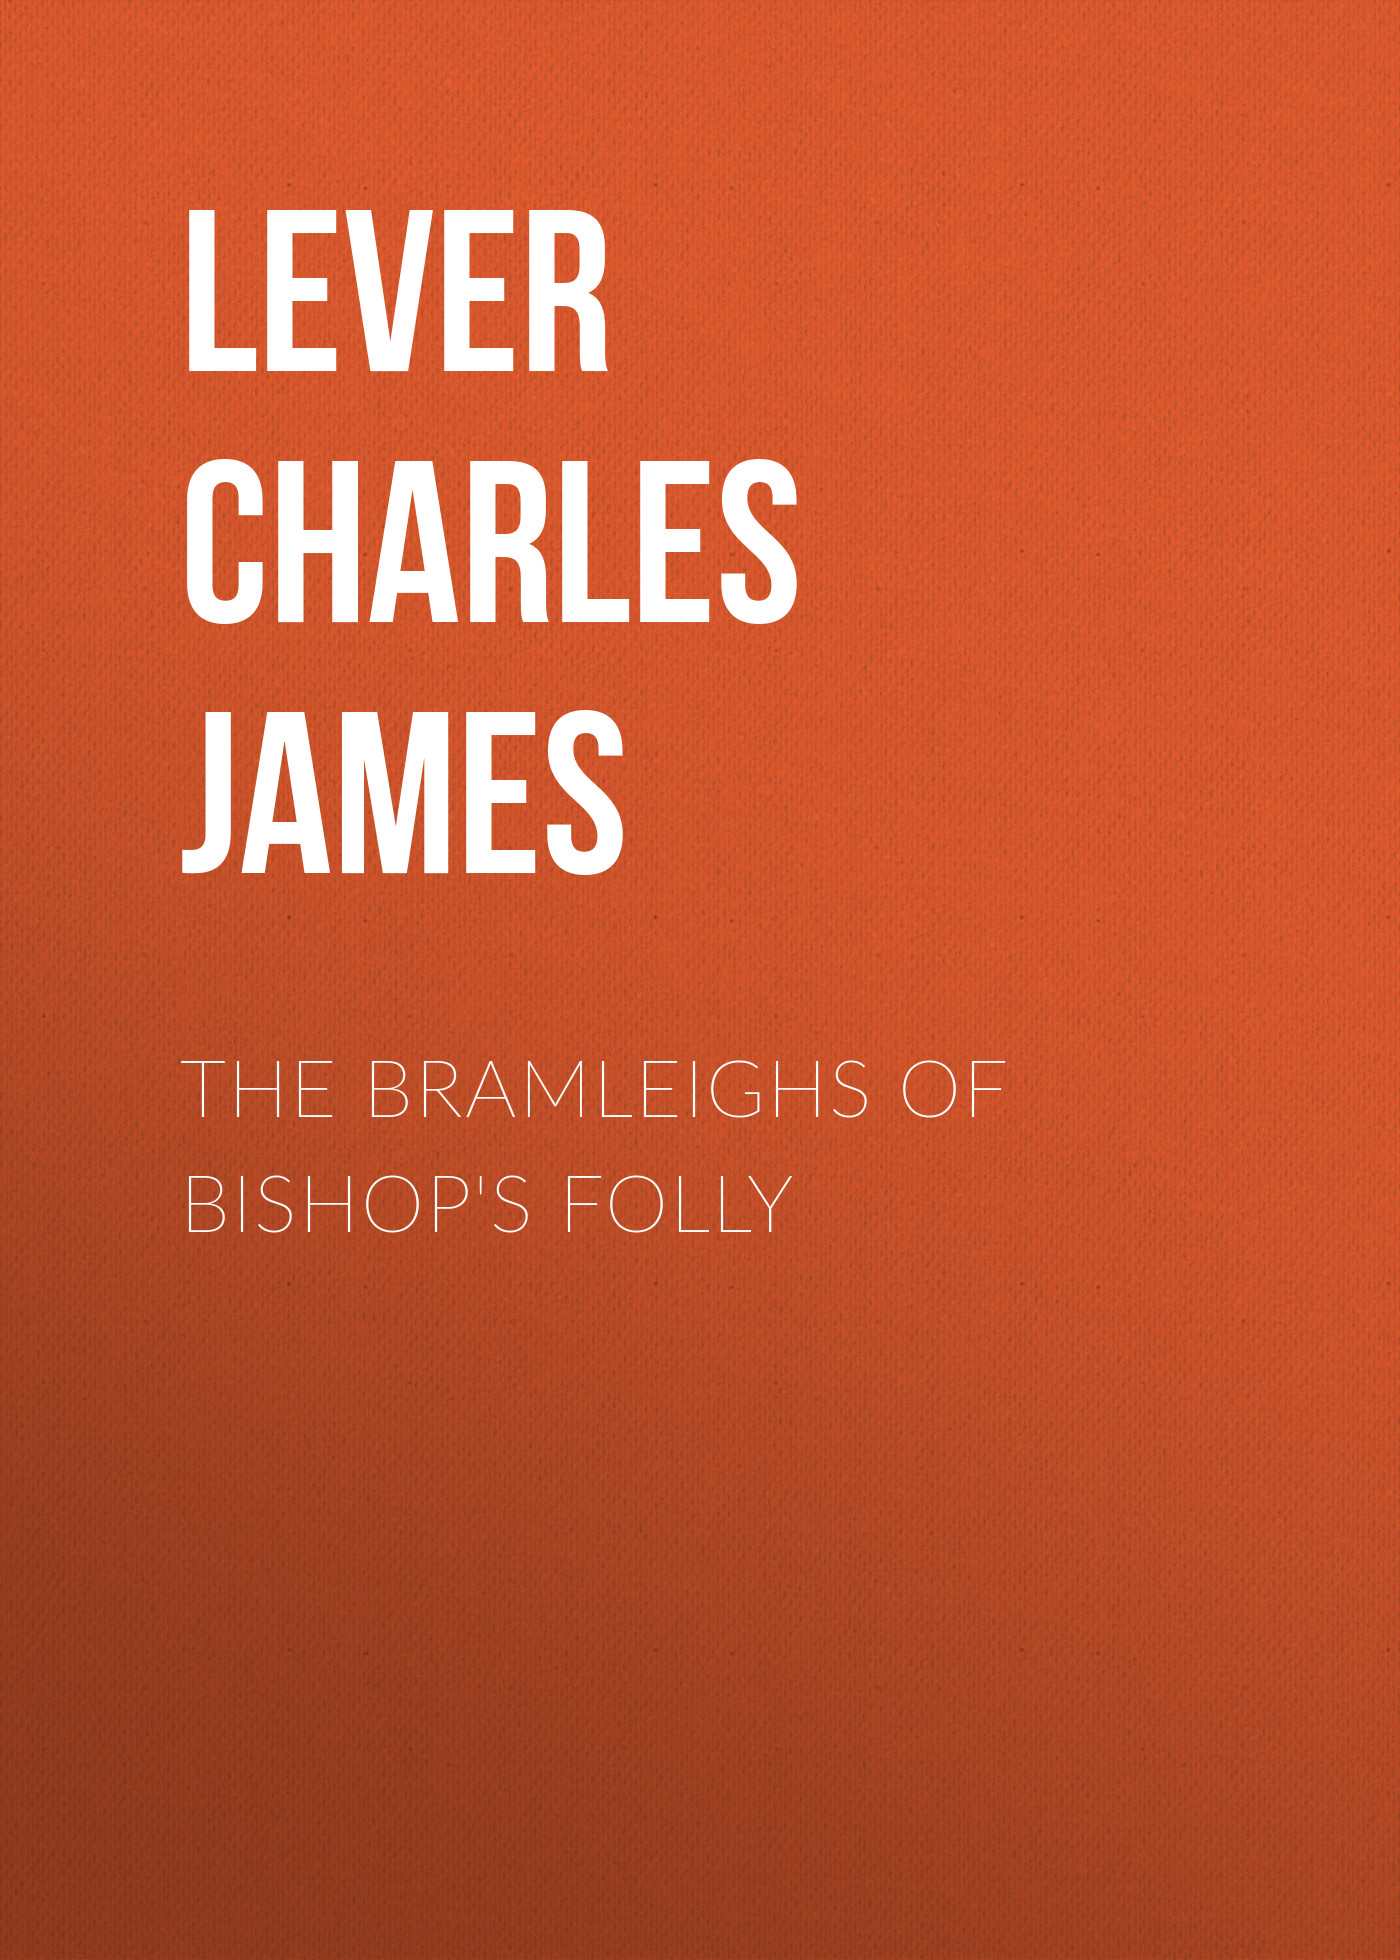 Книга The Bramleighs of Bishop's Folly из серии , созданная Charles Lever, может относится к жанру Литература 19 века, Зарубежная старинная литература, Зарубежная классика. Стоимость электронной книги The Bramleighs of Bishop's Folly с идентификатором 25448756 составляет 0 руб.